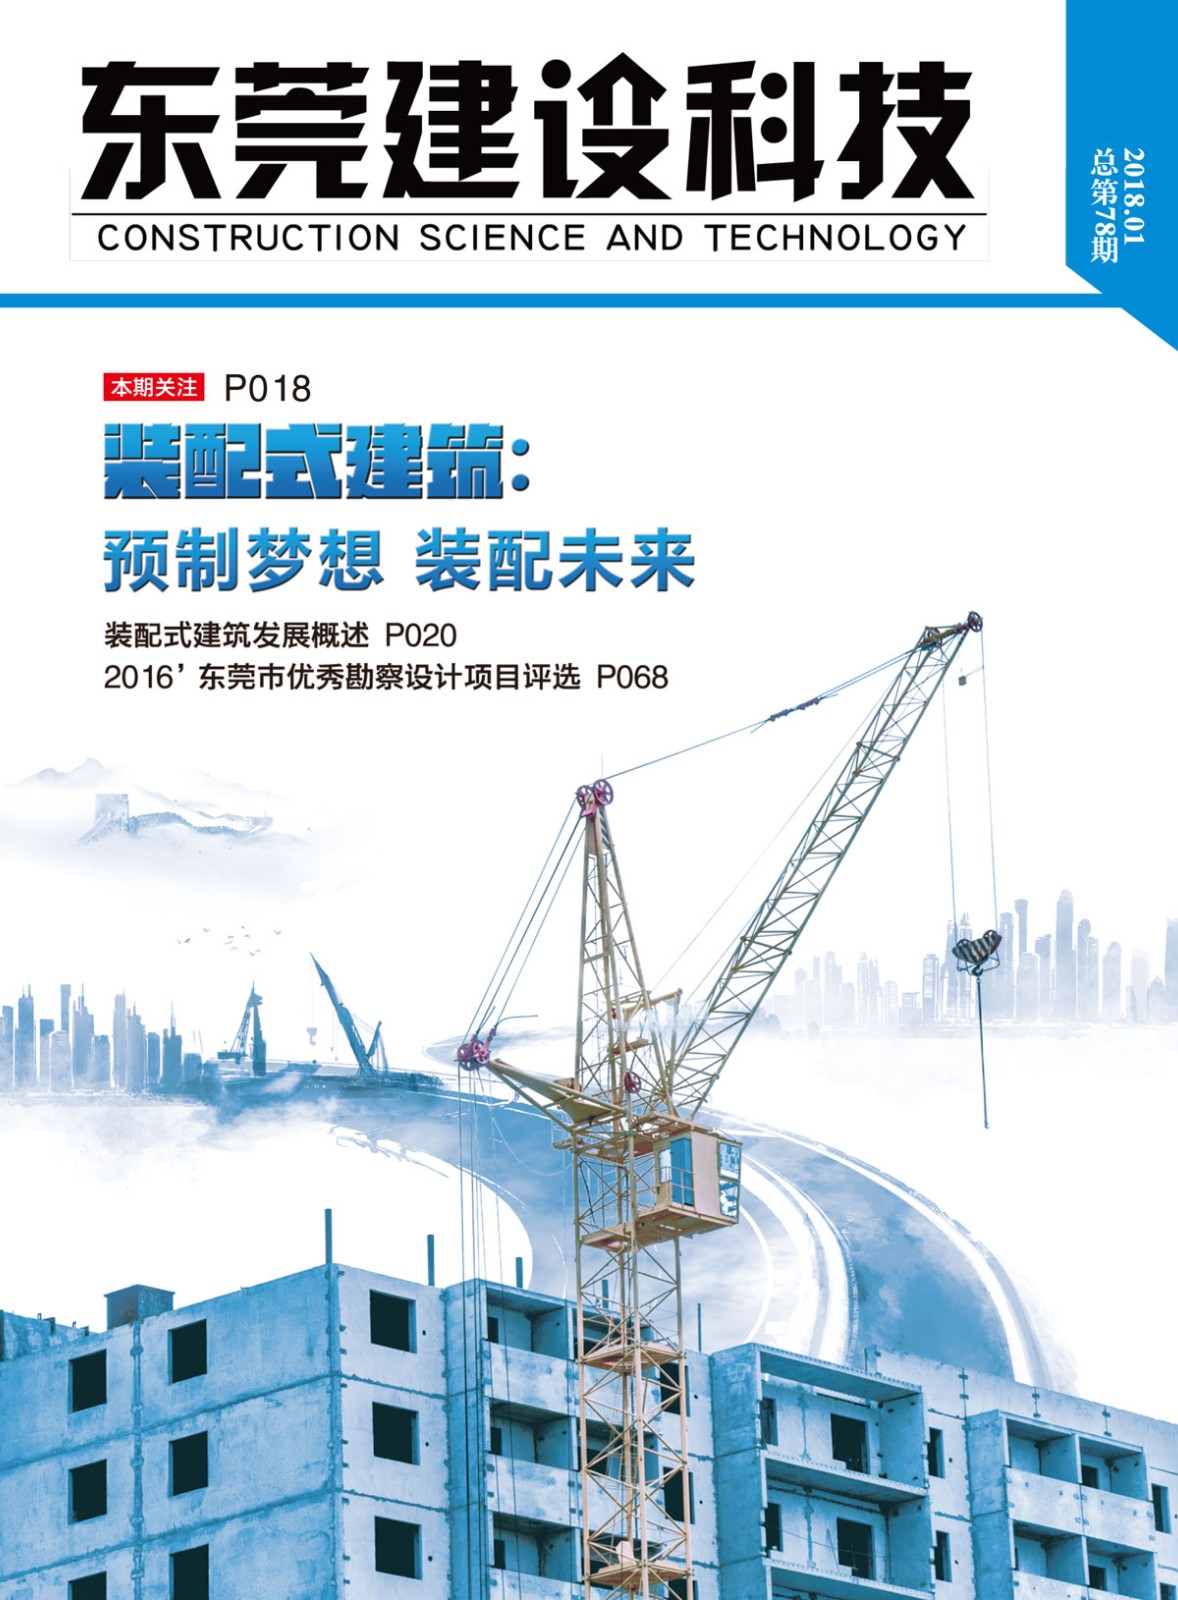 《东莞建设科←技》第78期